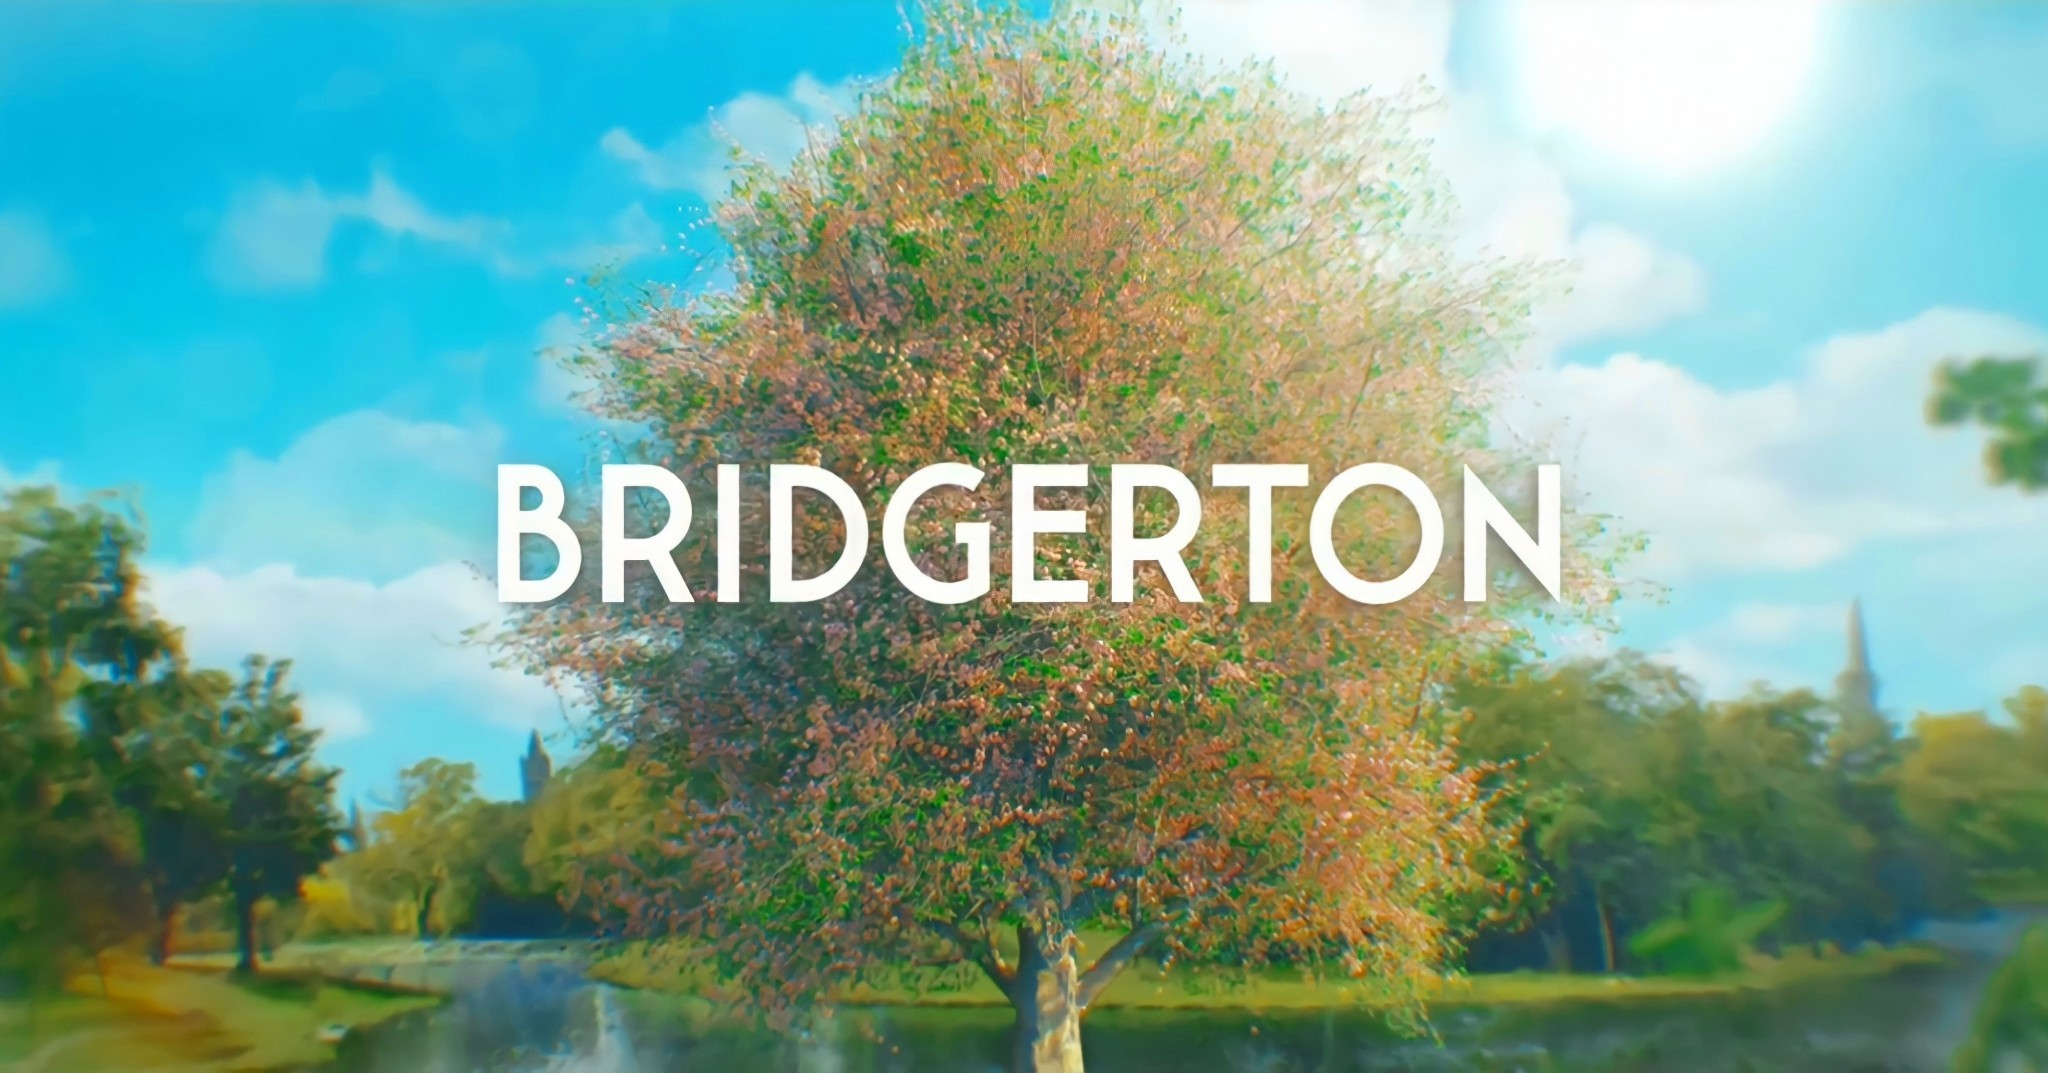 “Bridgerton”: la Reggenza a colori